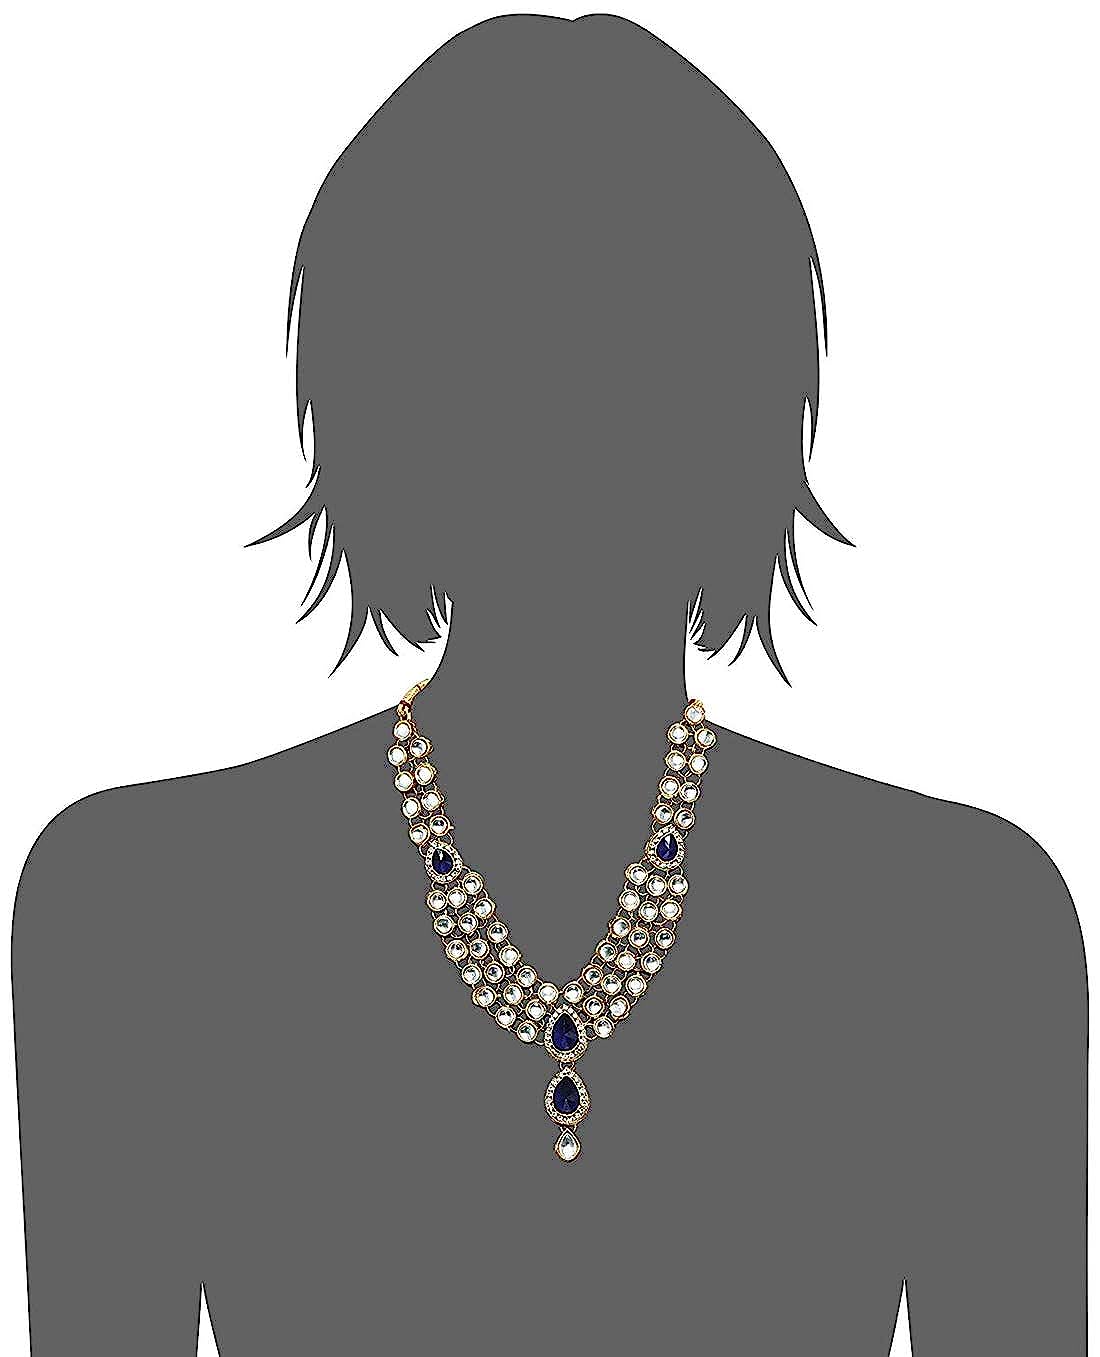 Party Wear Kundan Necklace Jewellery Set